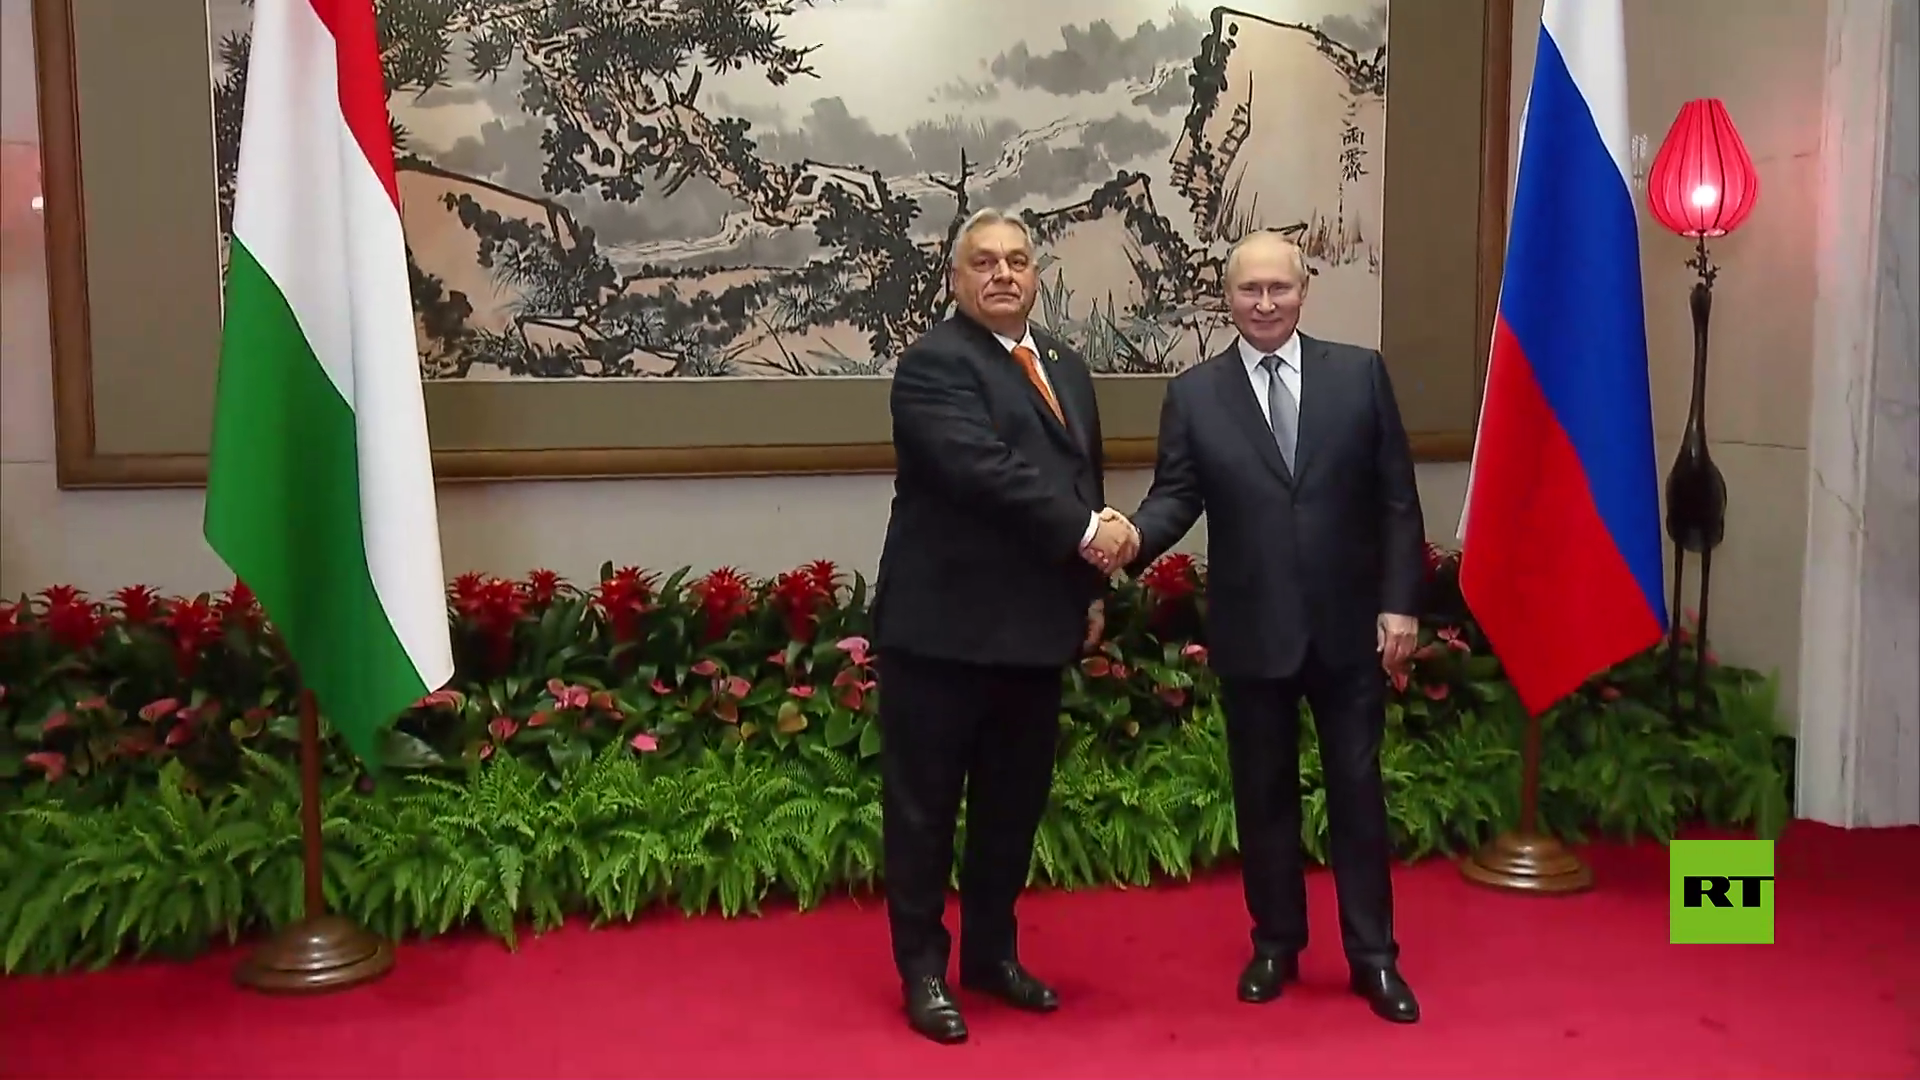 بوتين وأوربان يشيدان بمستوى العلاقات الروسية الهنغارية وتطورها على مختلف الأصعدة